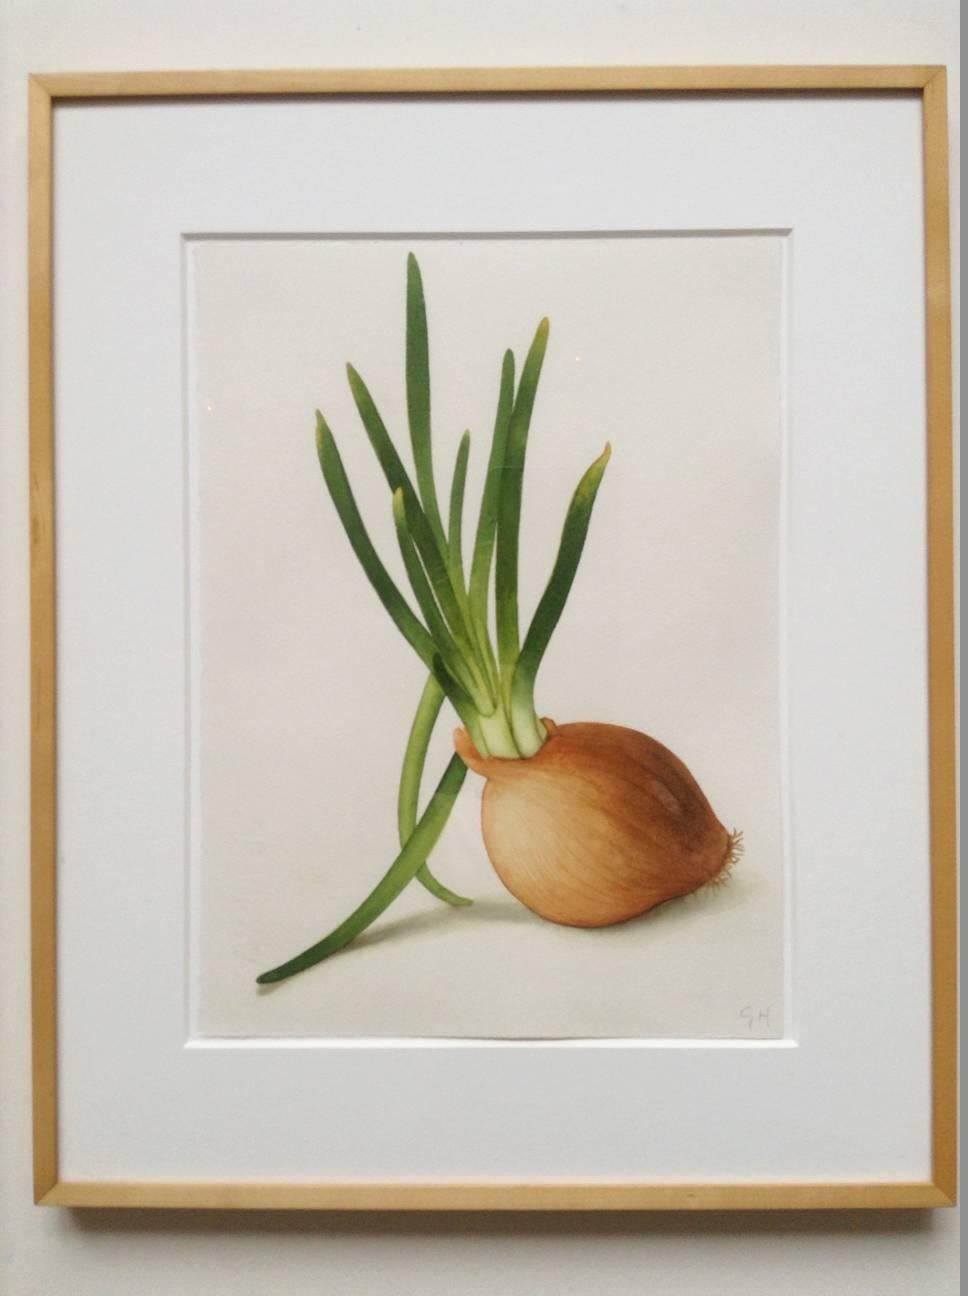 Onion - Art by Greg Hull